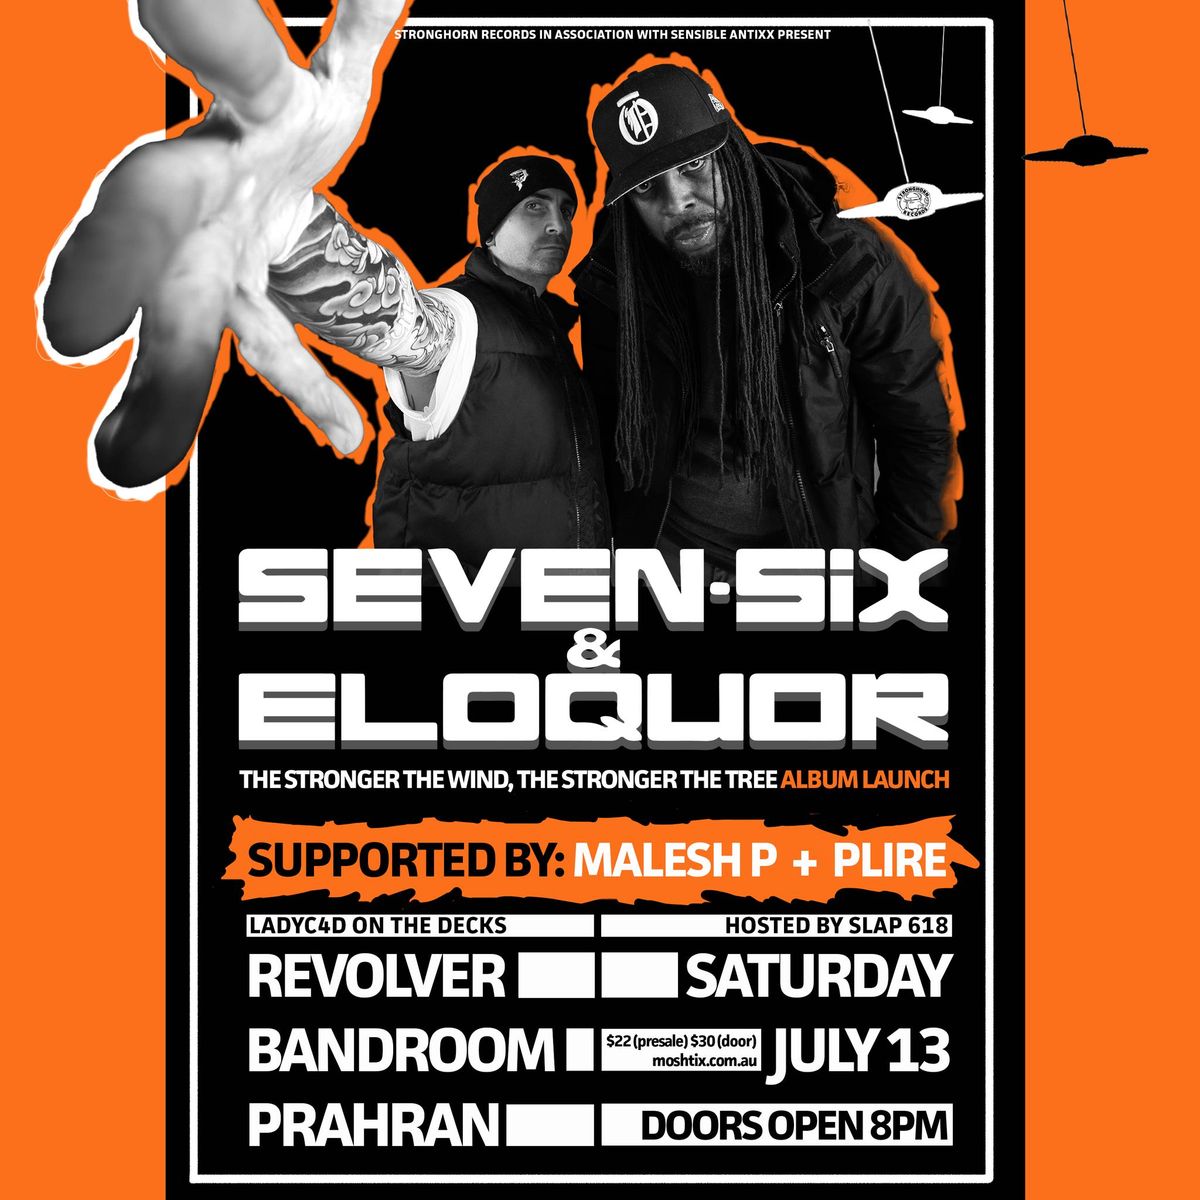 Seven Six & Eloquor: Album Launch at Revolver